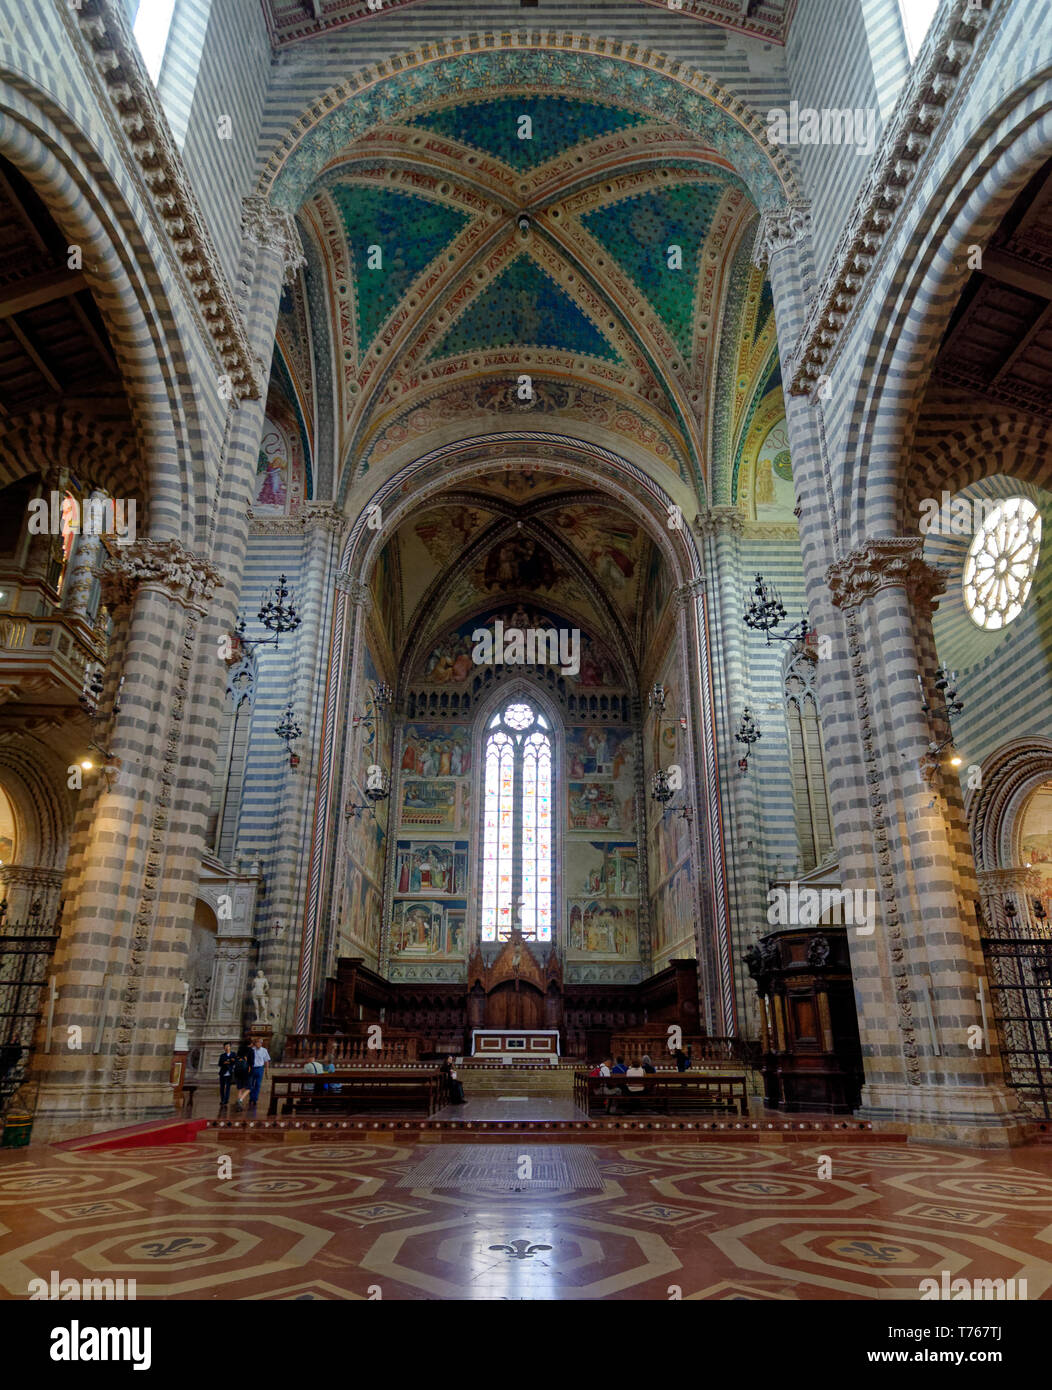 Il bellissimo interno del Duomo di Orvieto (Duomo di Orvieto), con massicci di bianco e grigio di colonne e di magnifici affreschi sulle pareti e sul soffitto Foto Stock